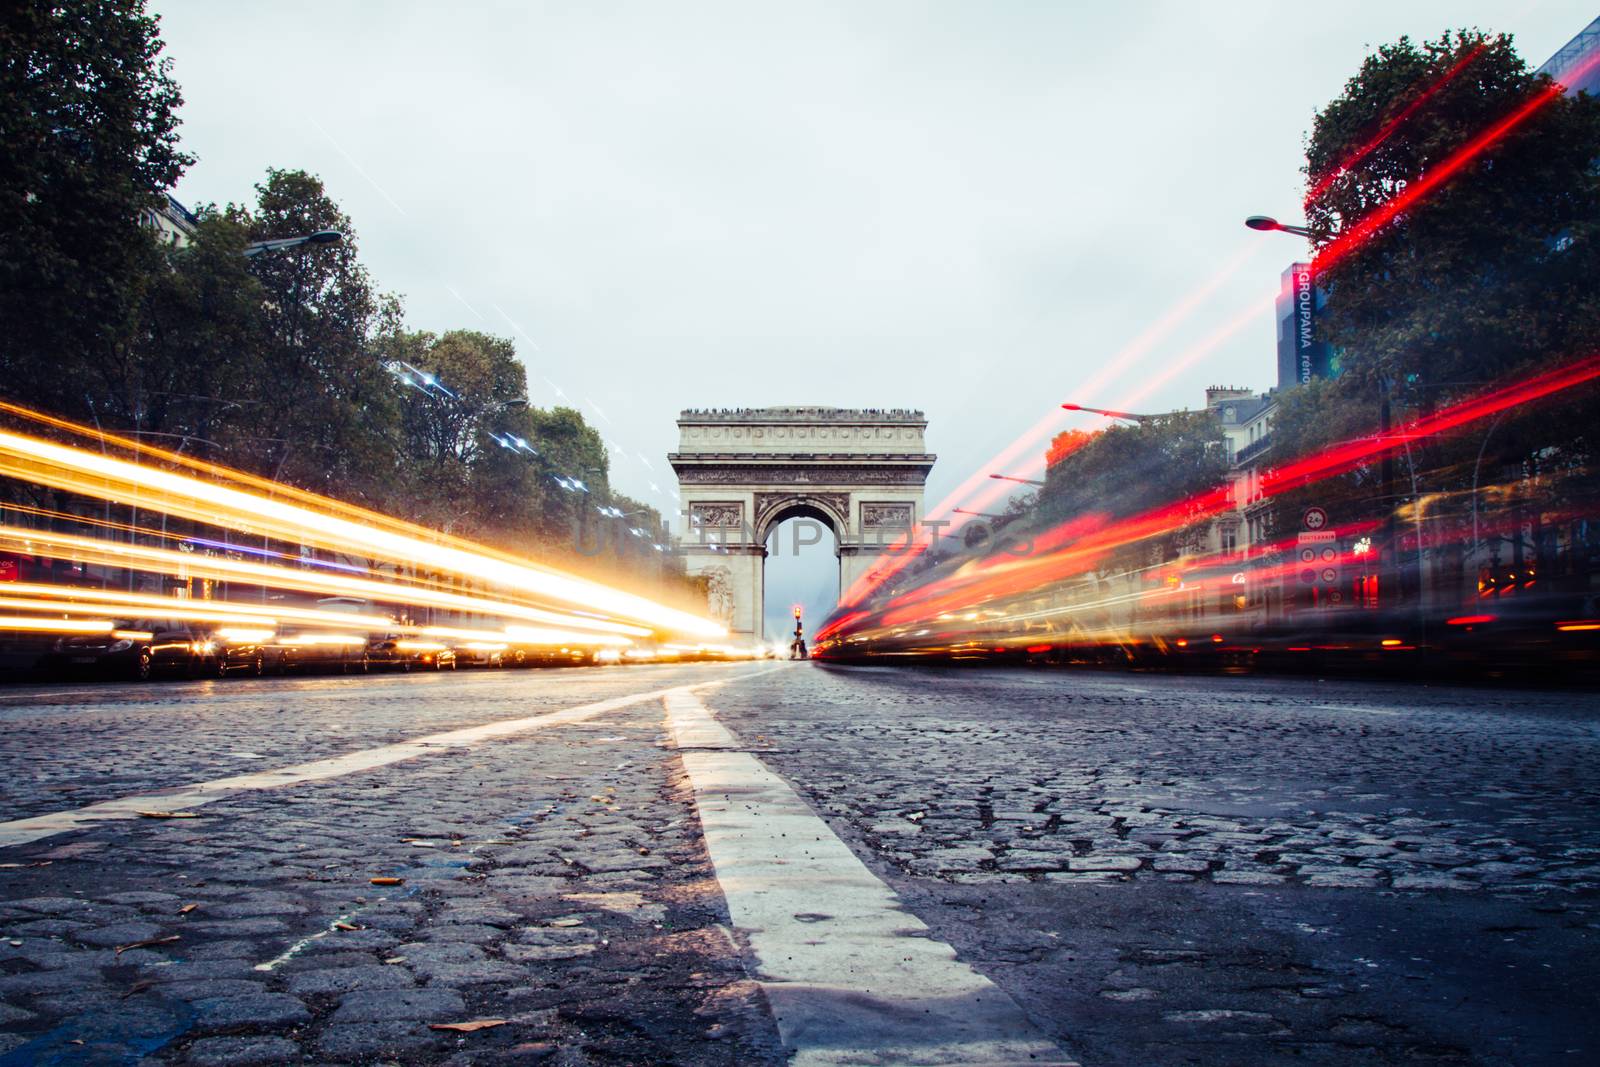 L'Arc de Triomphe in Paris, France